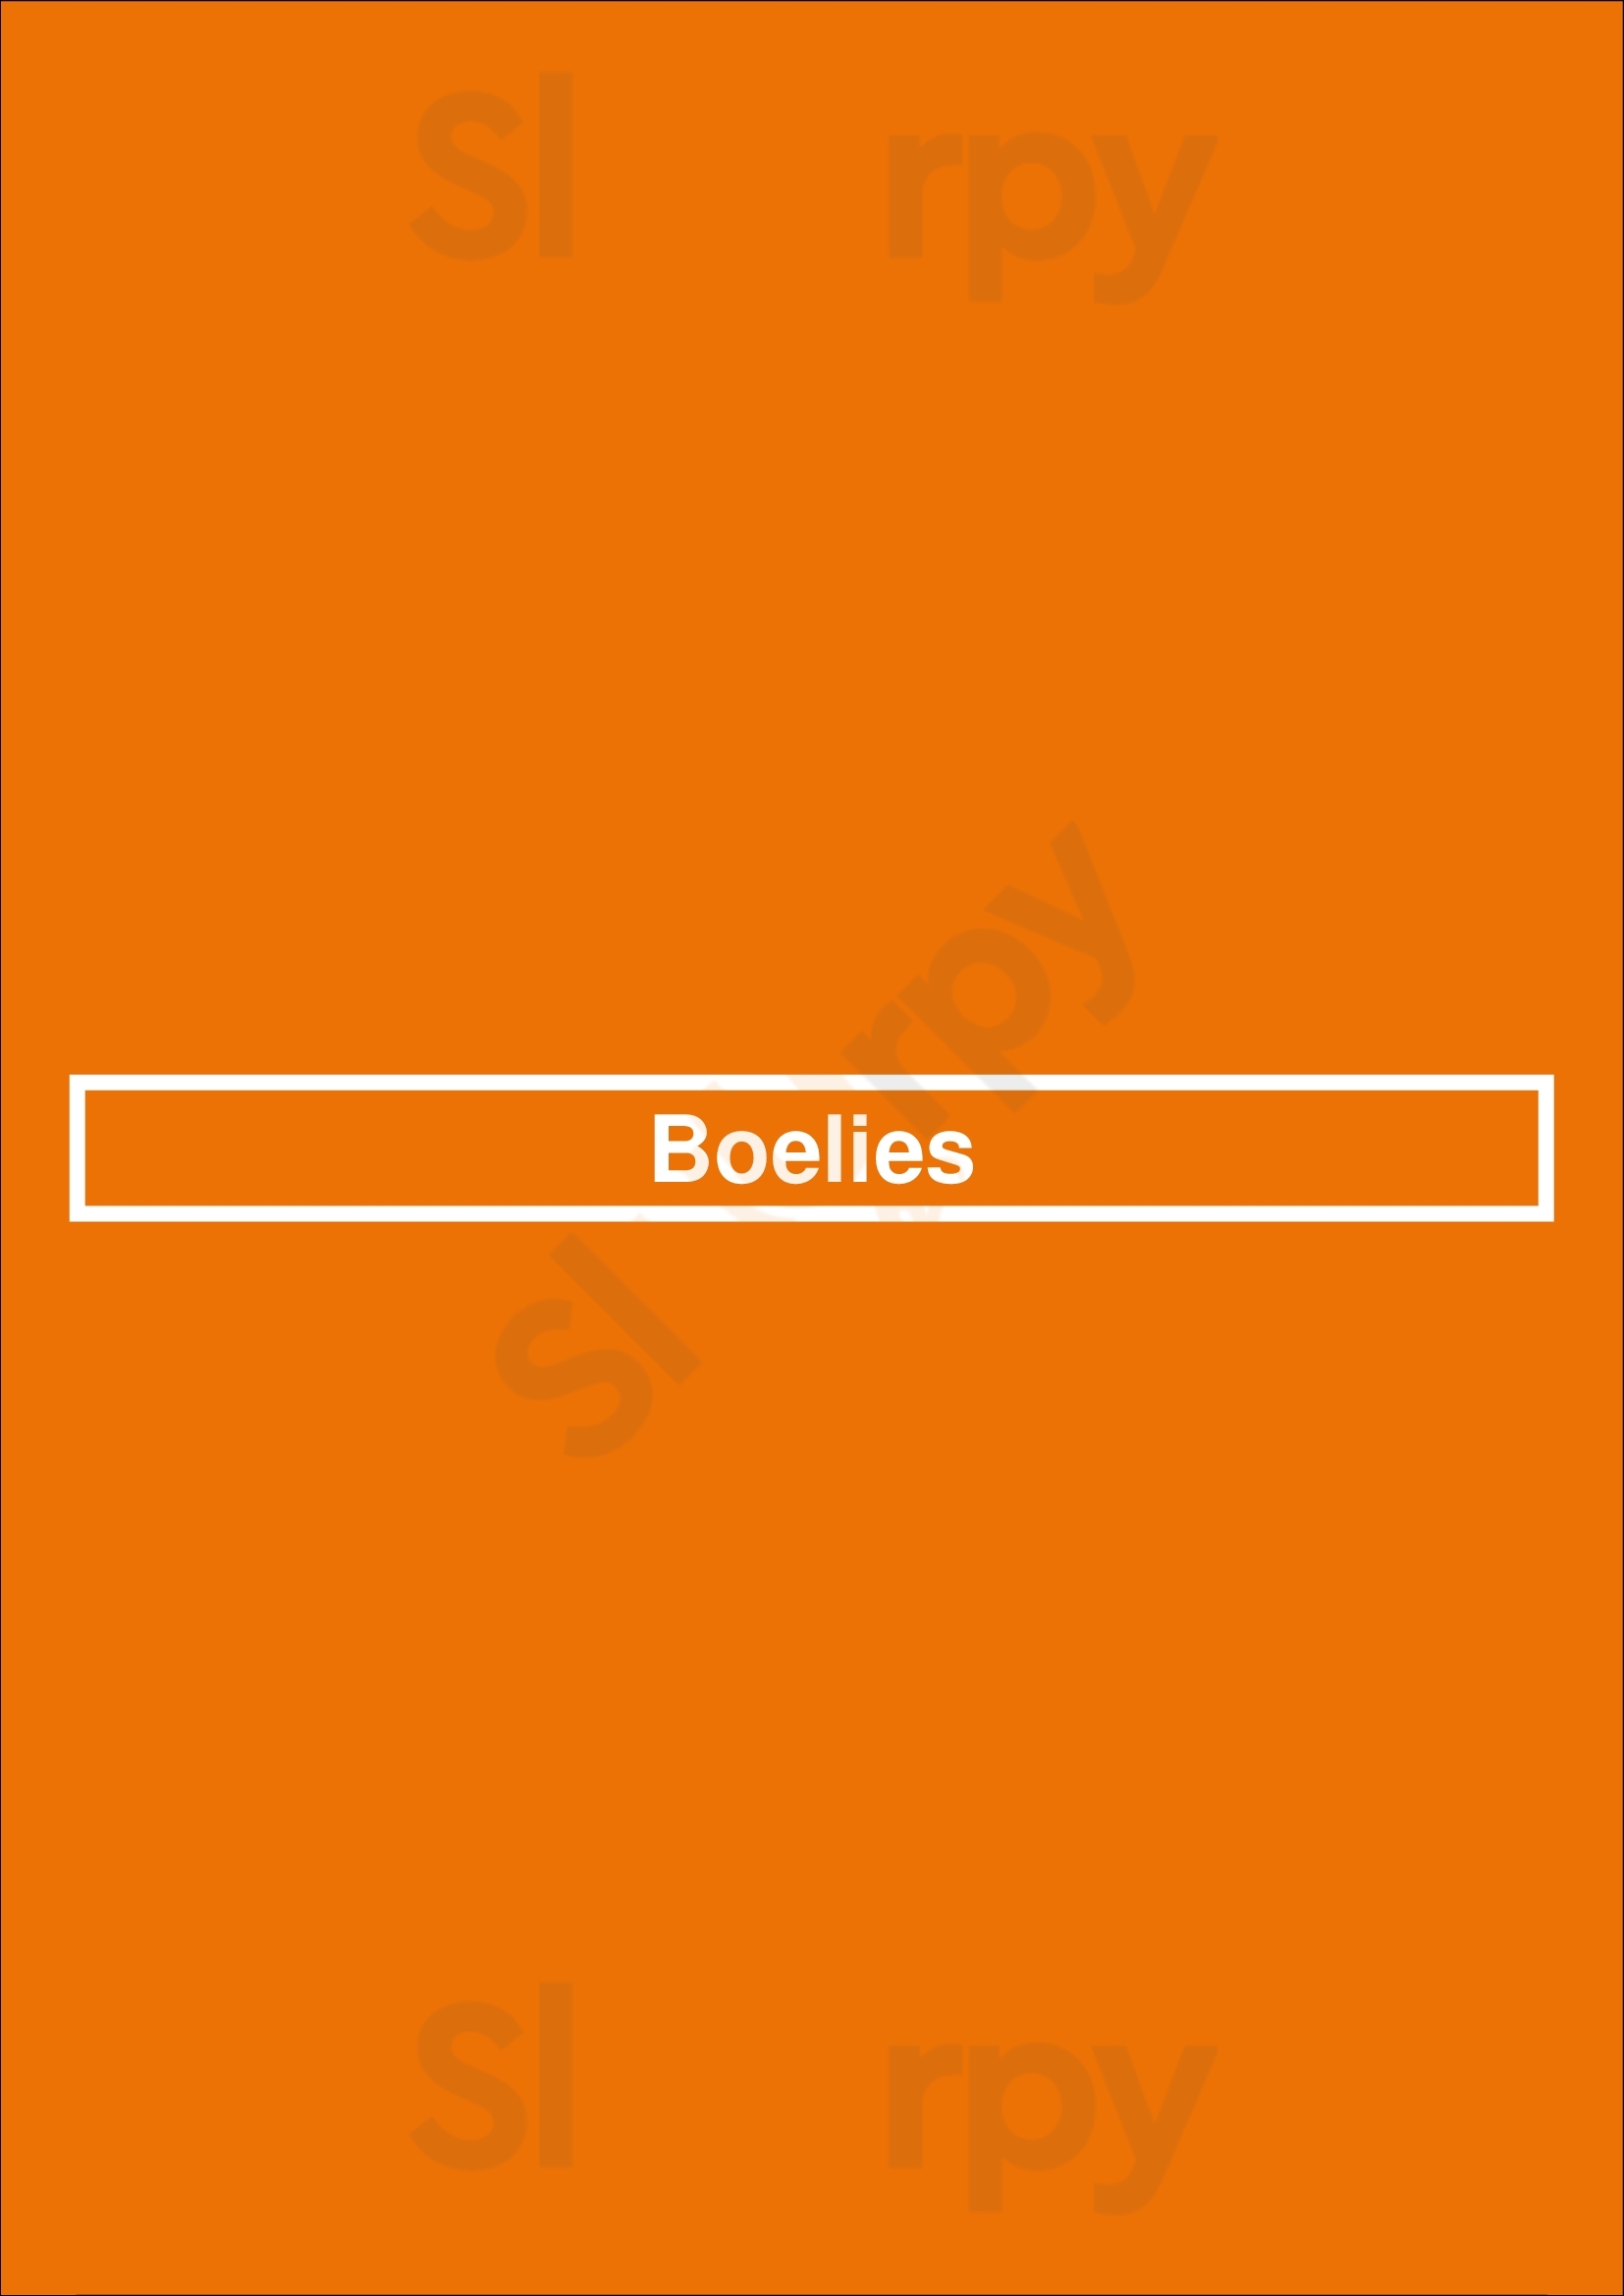 Boelies Hellevoetsluis Menu - 1